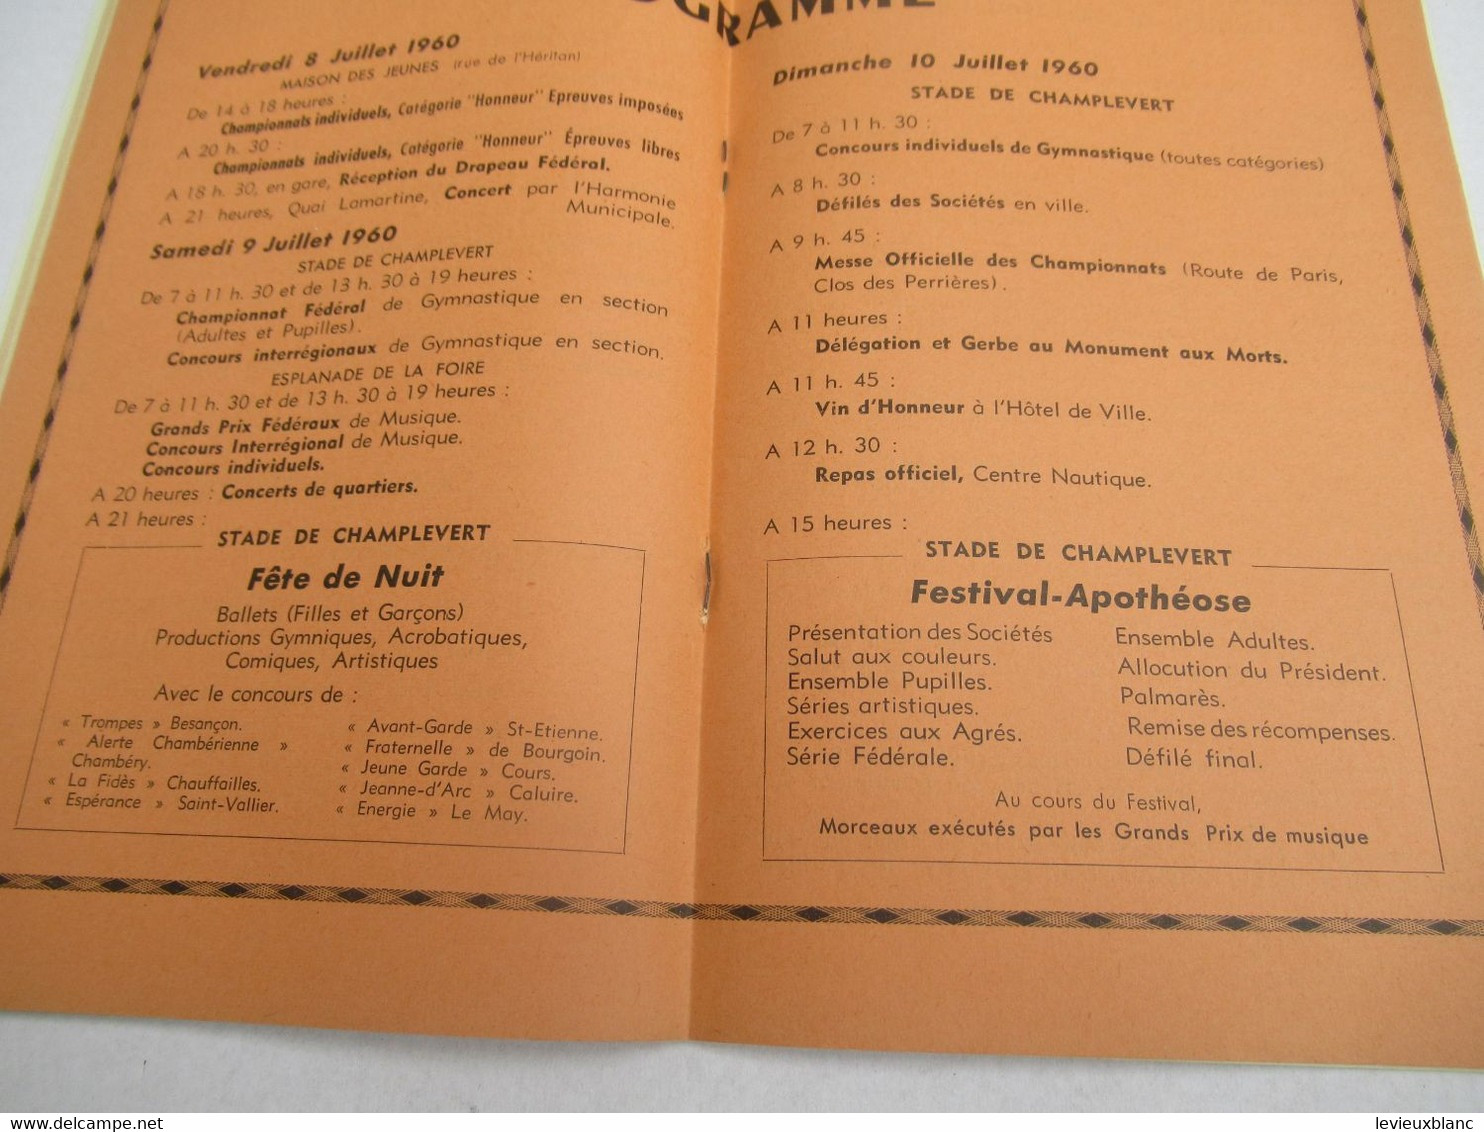 Fédération Sportive de France/Championnats  Fédéraux de Gymnastique/Grands Prix de Musique/MACON/1960      PROG315